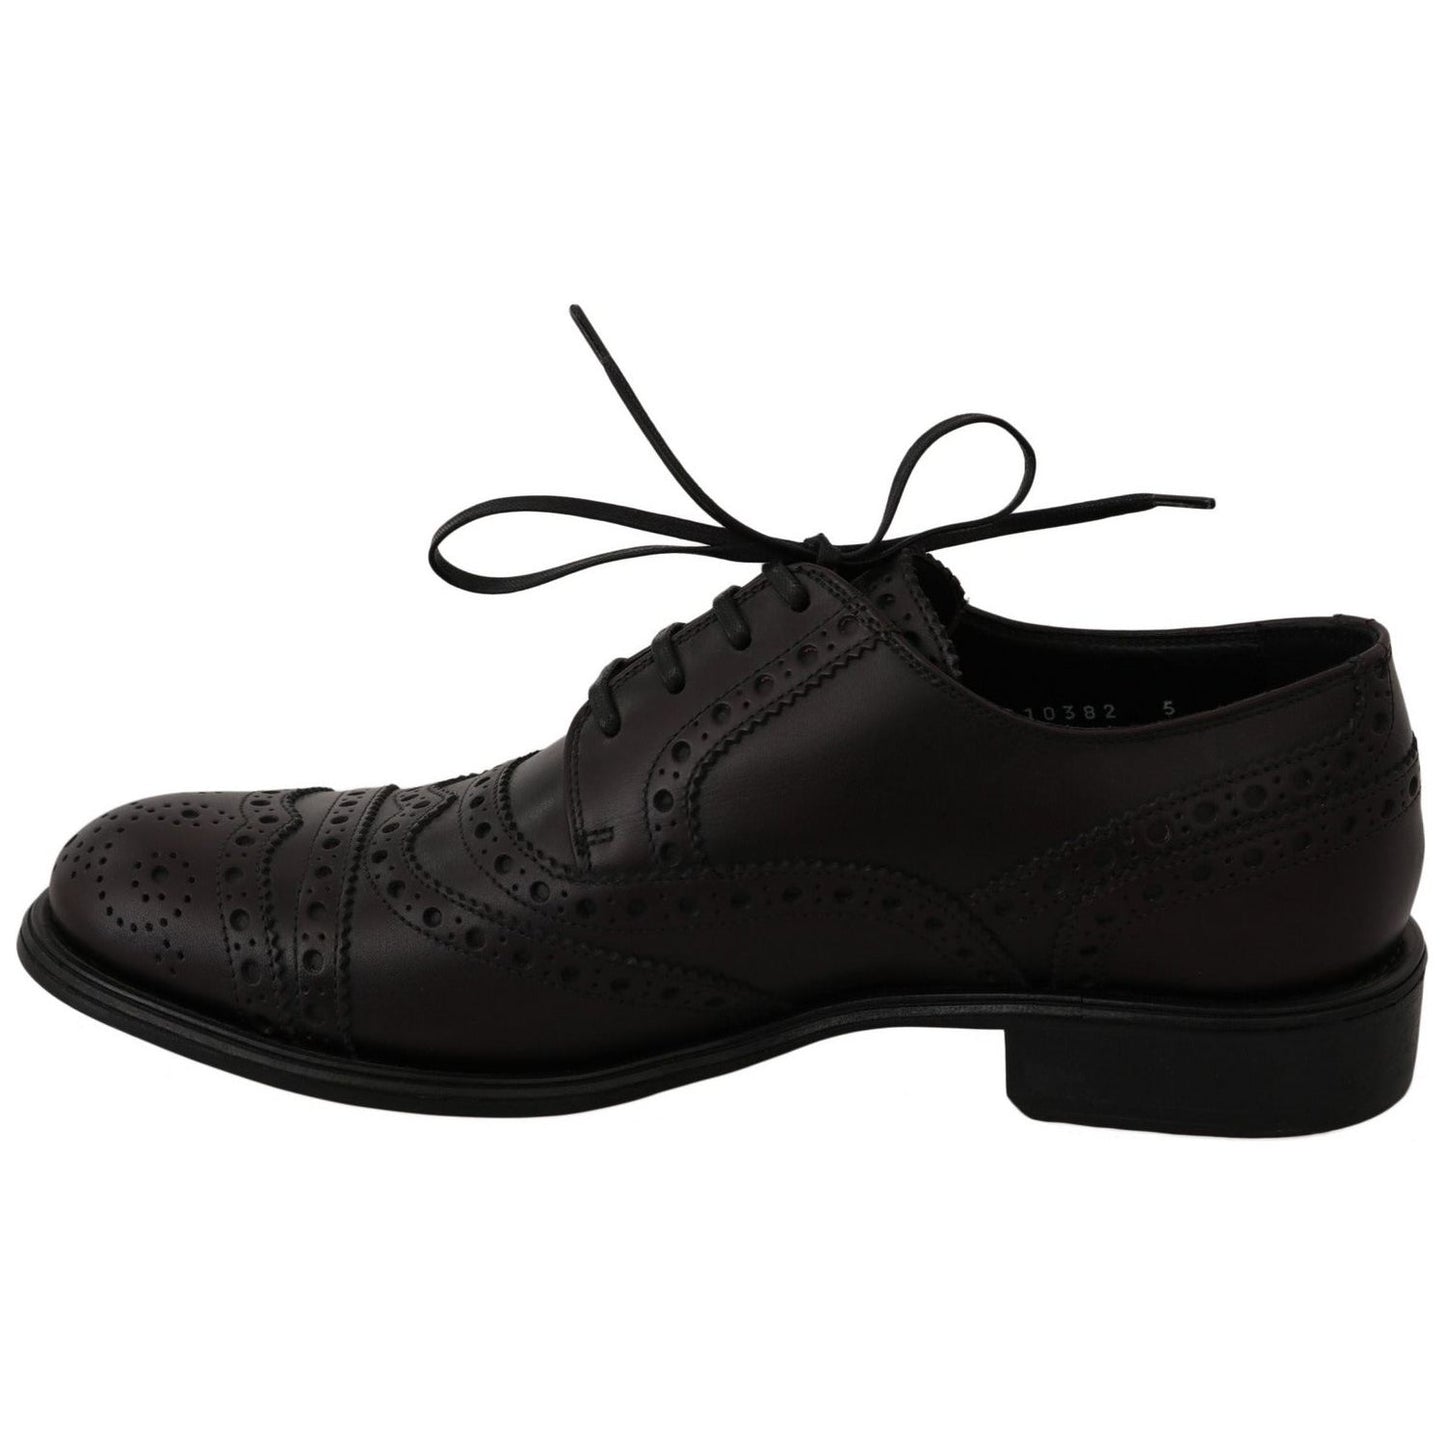 Dolce & Gabbana Elegant Bordeaux Wingtip Derby Dress Shoes Dress Shoes black-leather-wingtip-oxford-dress-shoes-1